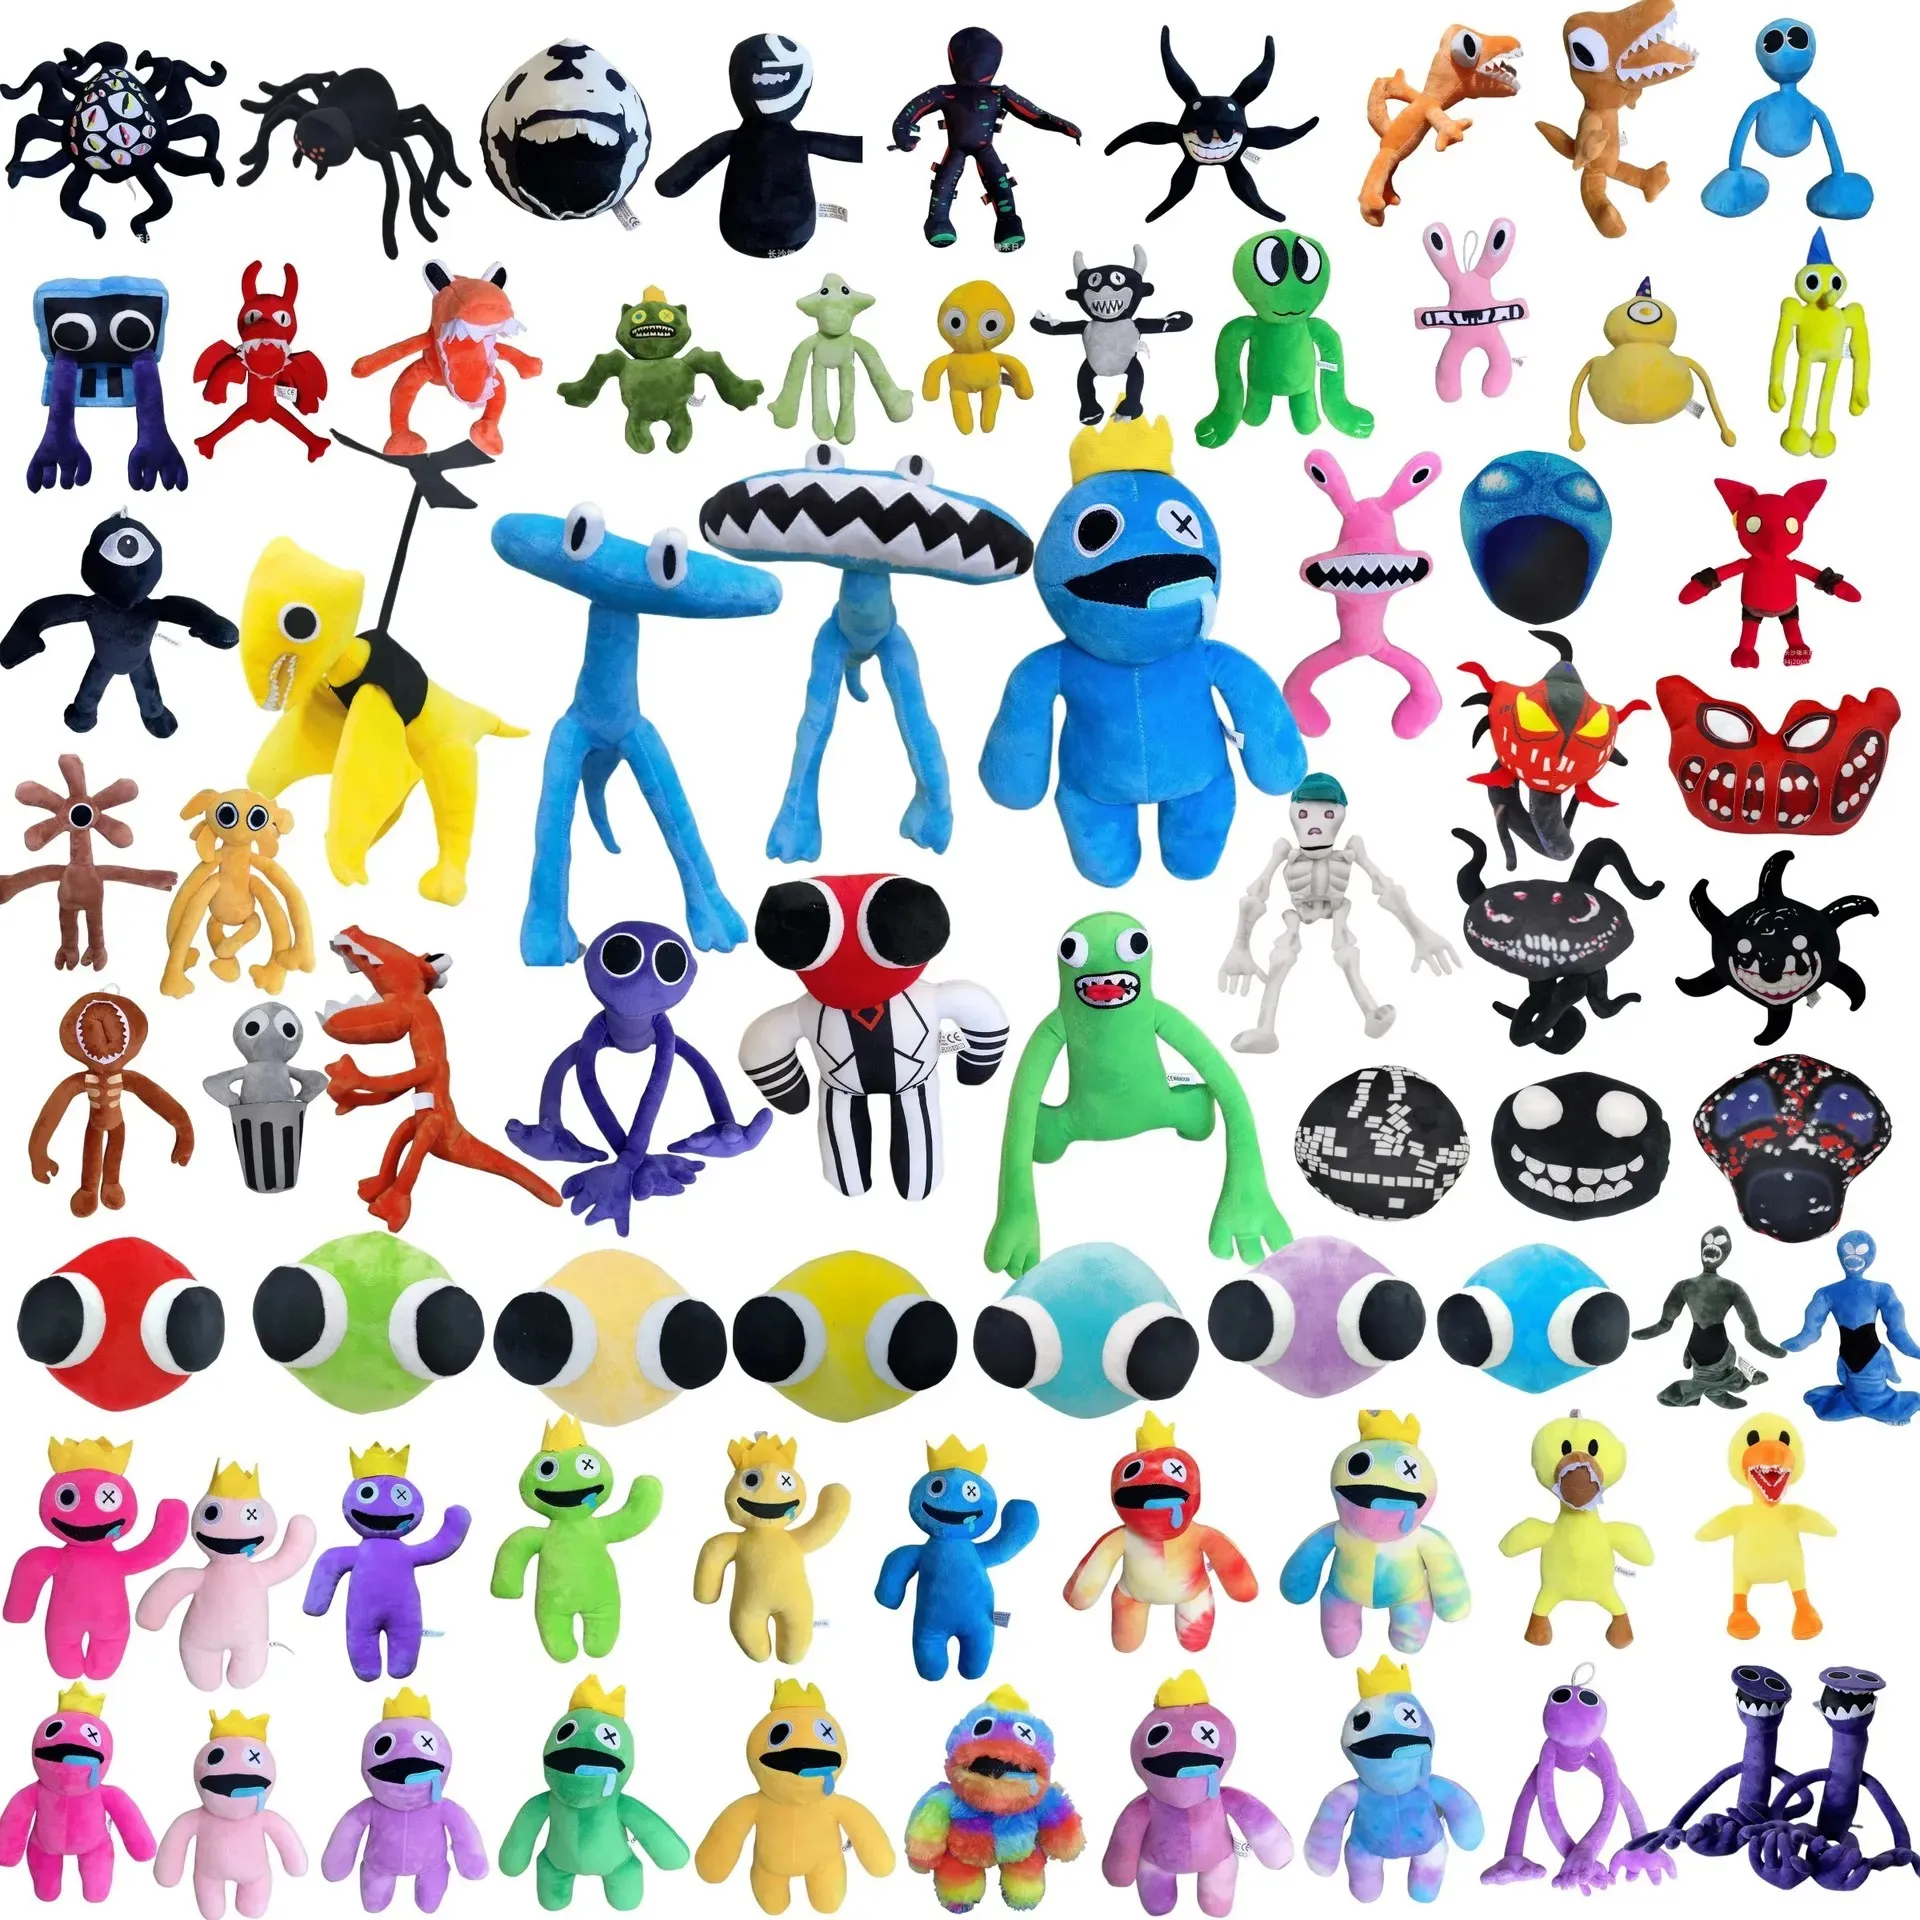 30 سم Roblox Rainbow Friends Plush Toy Cartoon Game Dolling Kawaii Blue Monster Soft Studed Animal Toys for Kids Fans